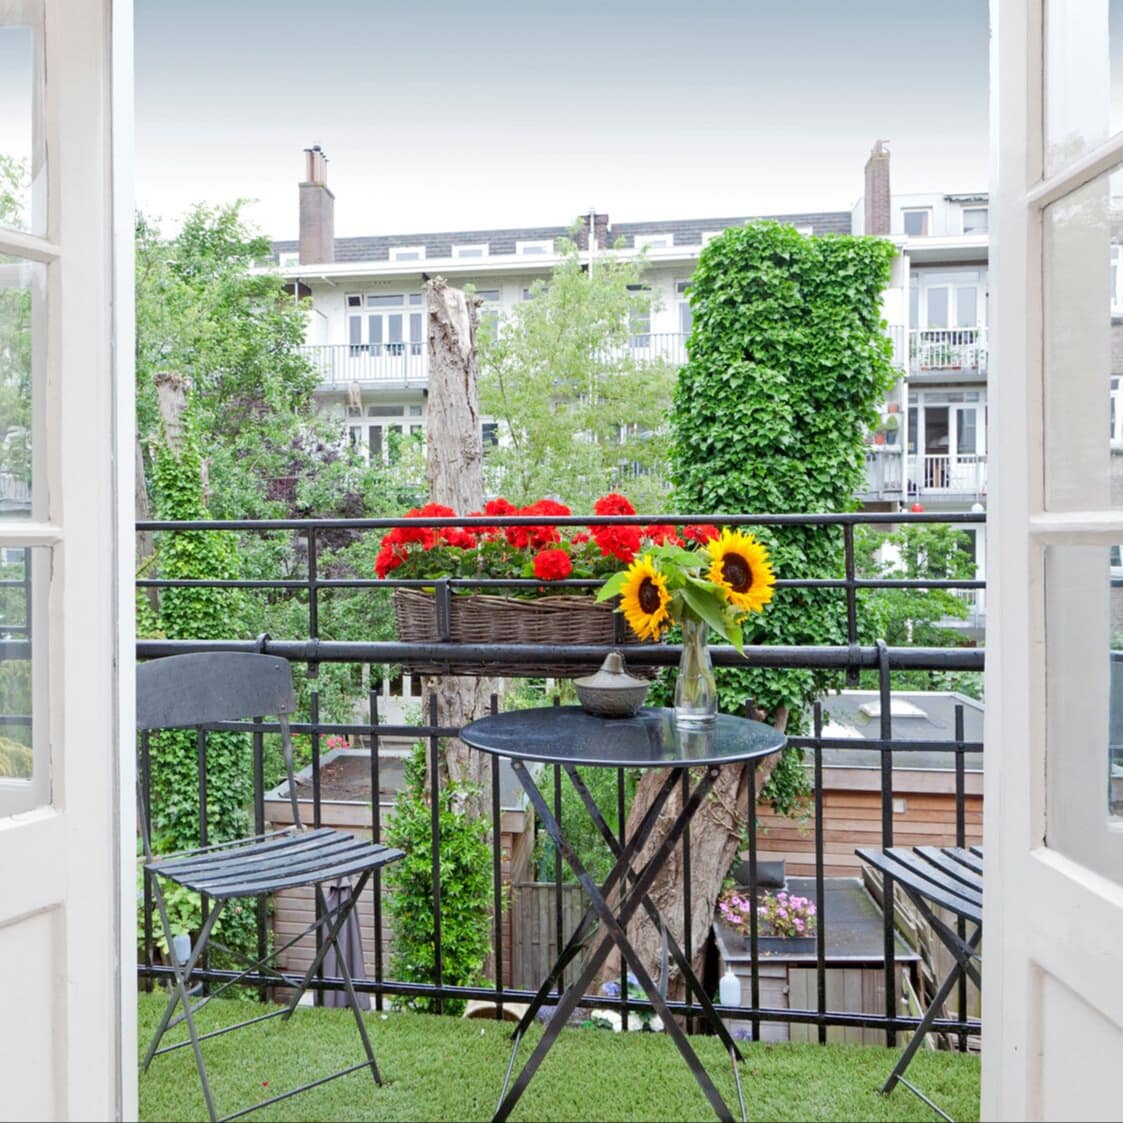 Ferienwohnung in Holland mit hellen Glastüren, die auf einen gemütlichen Balkon mit Tisch, Stühlen und Blumen führen, mit Blick auf Bäume und eine Häuserzeile